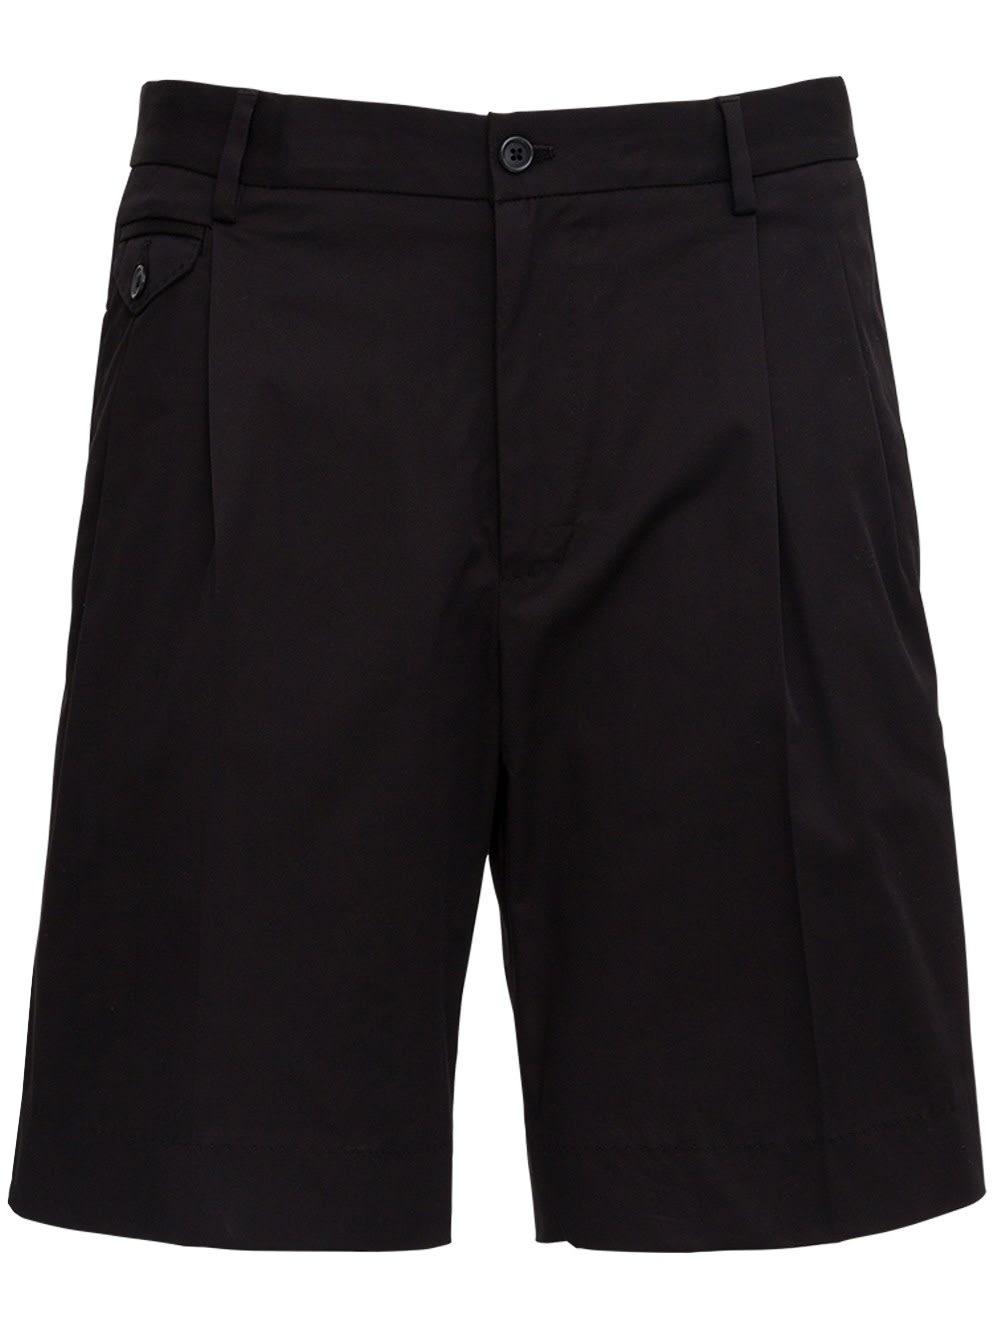 Dolce & Gabbana Black Jersey Bermuda Shorts